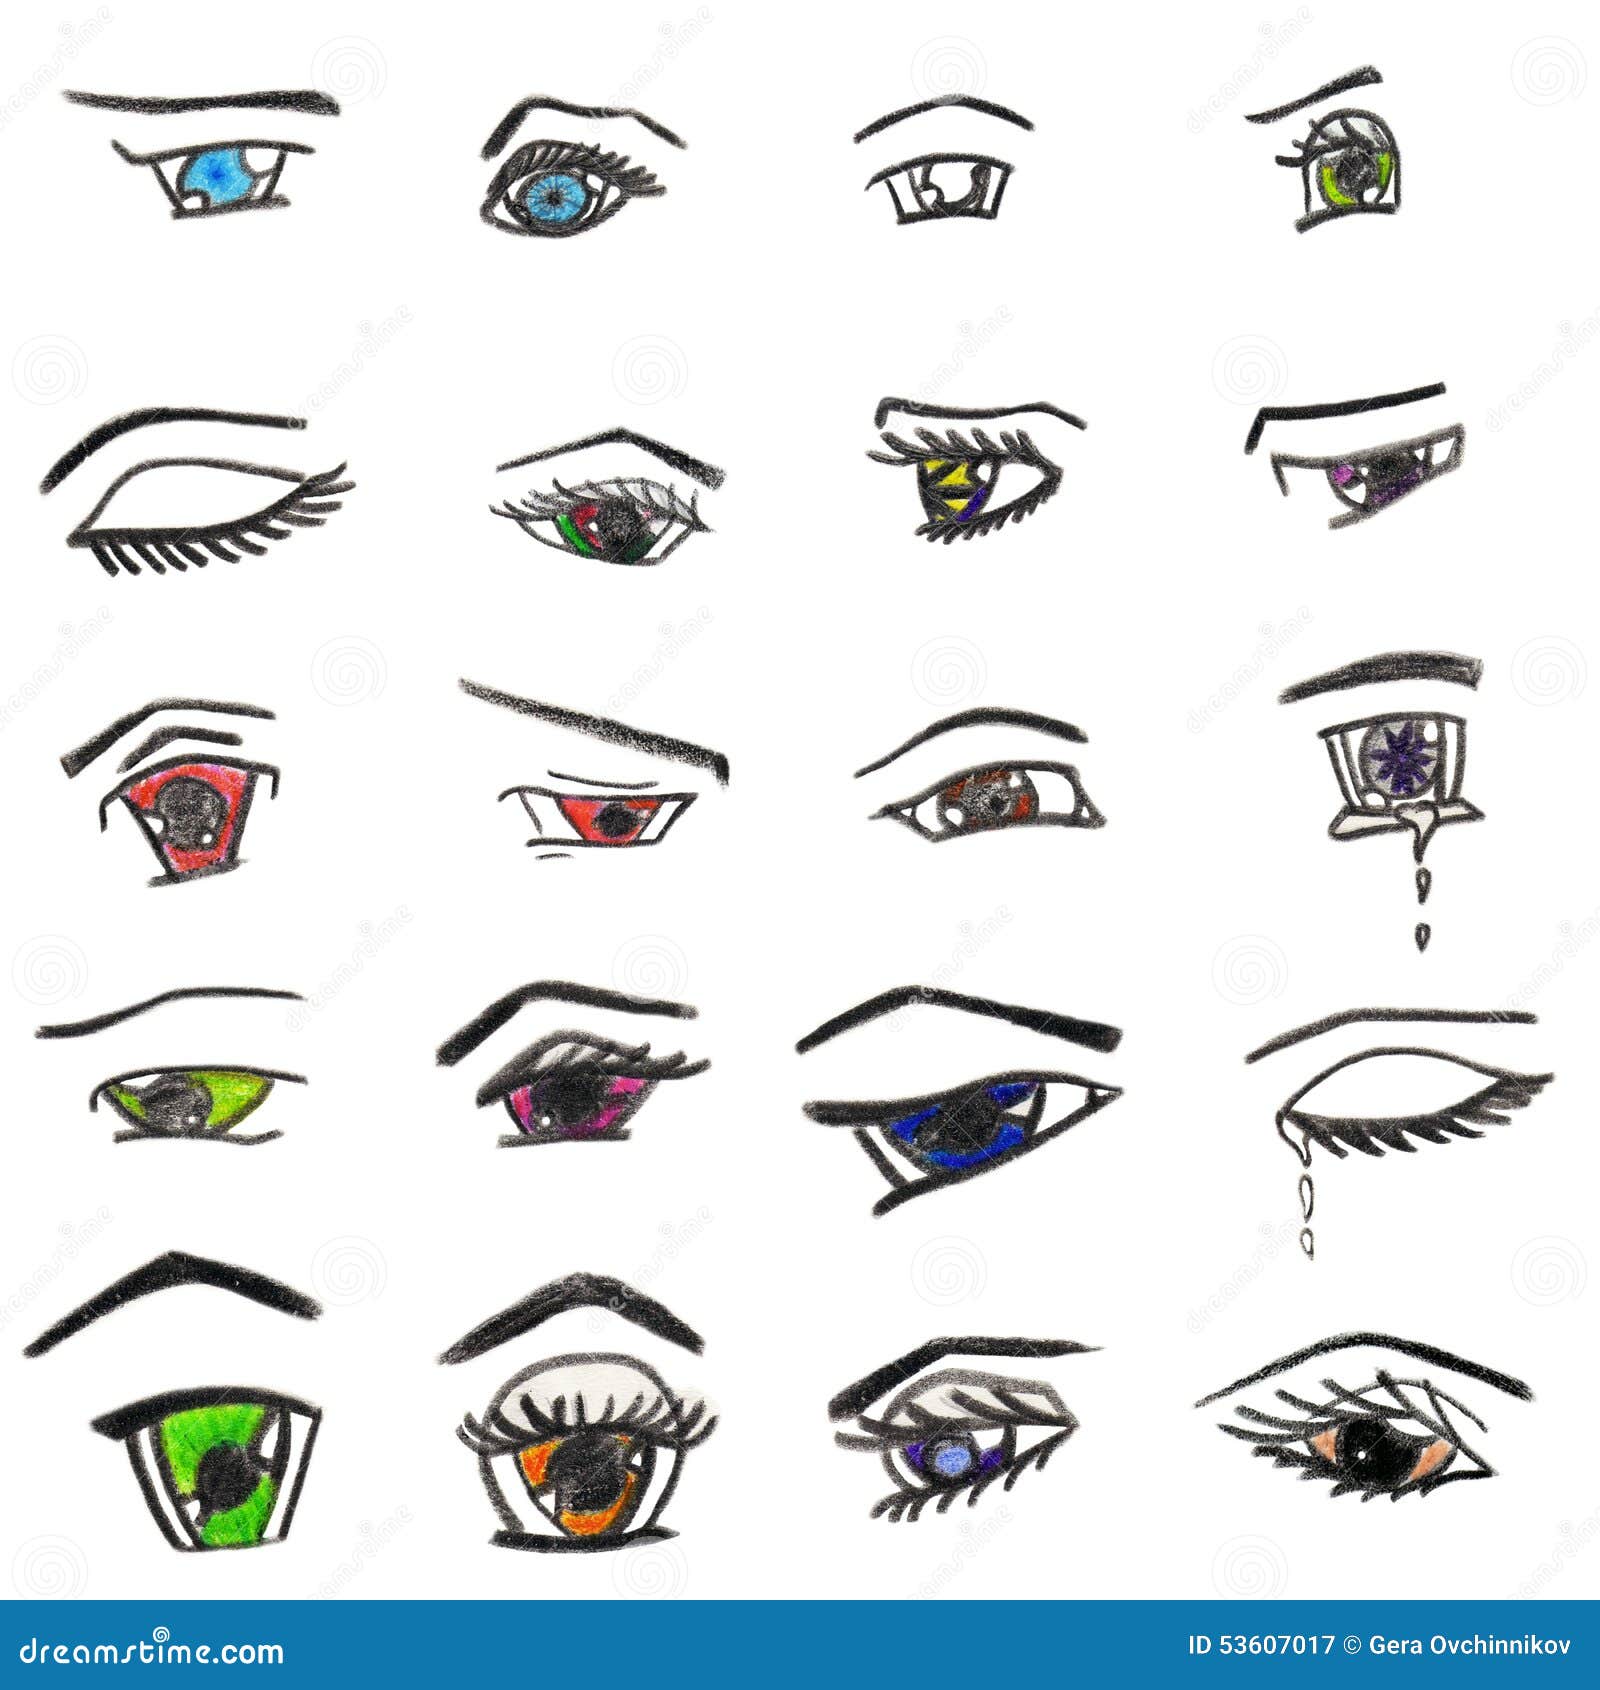 Anime Eyes Stock Illustration - Image: 53607017